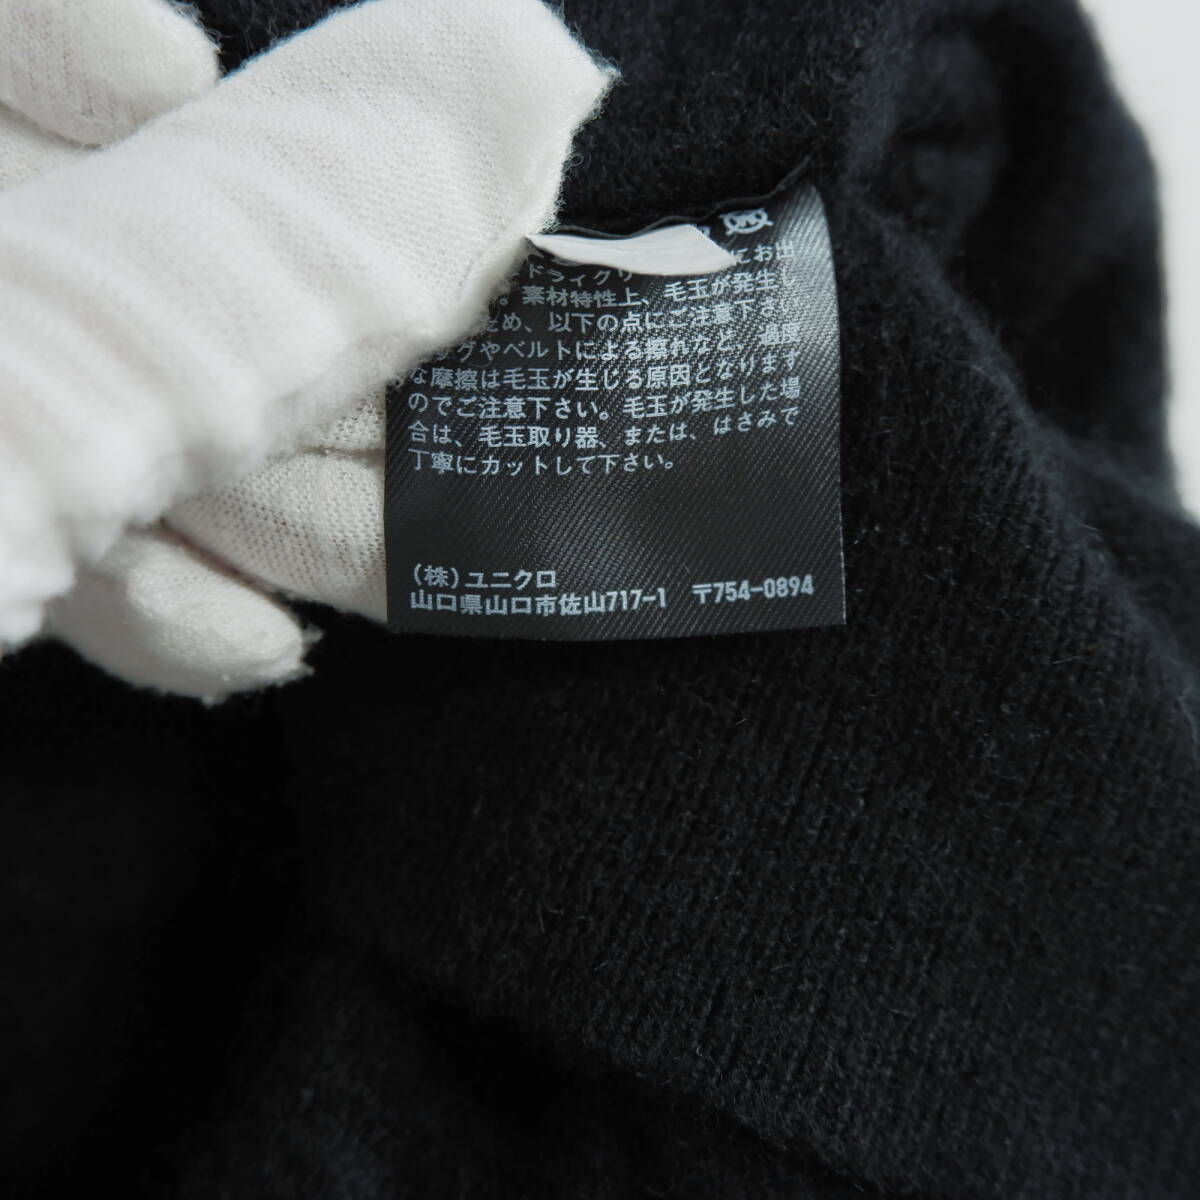 ◆美品 カシミヤ 100%◆ UNIQLO ユニクロ 長袖 ニット セーター 黒 ブラック メンズ M ◆送料無料◆ 1444E0